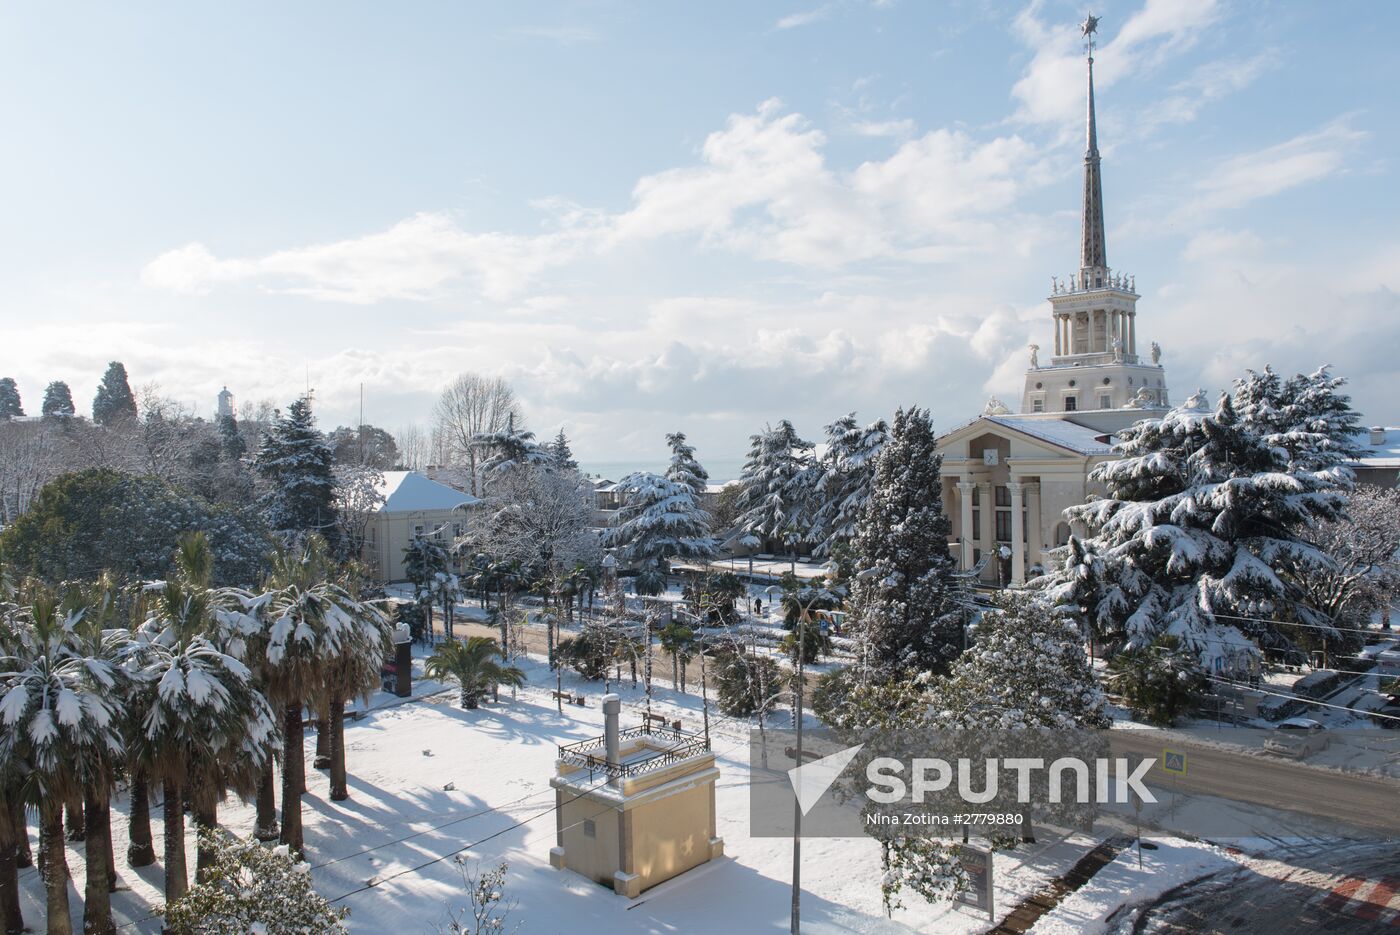 Winter in Sochi